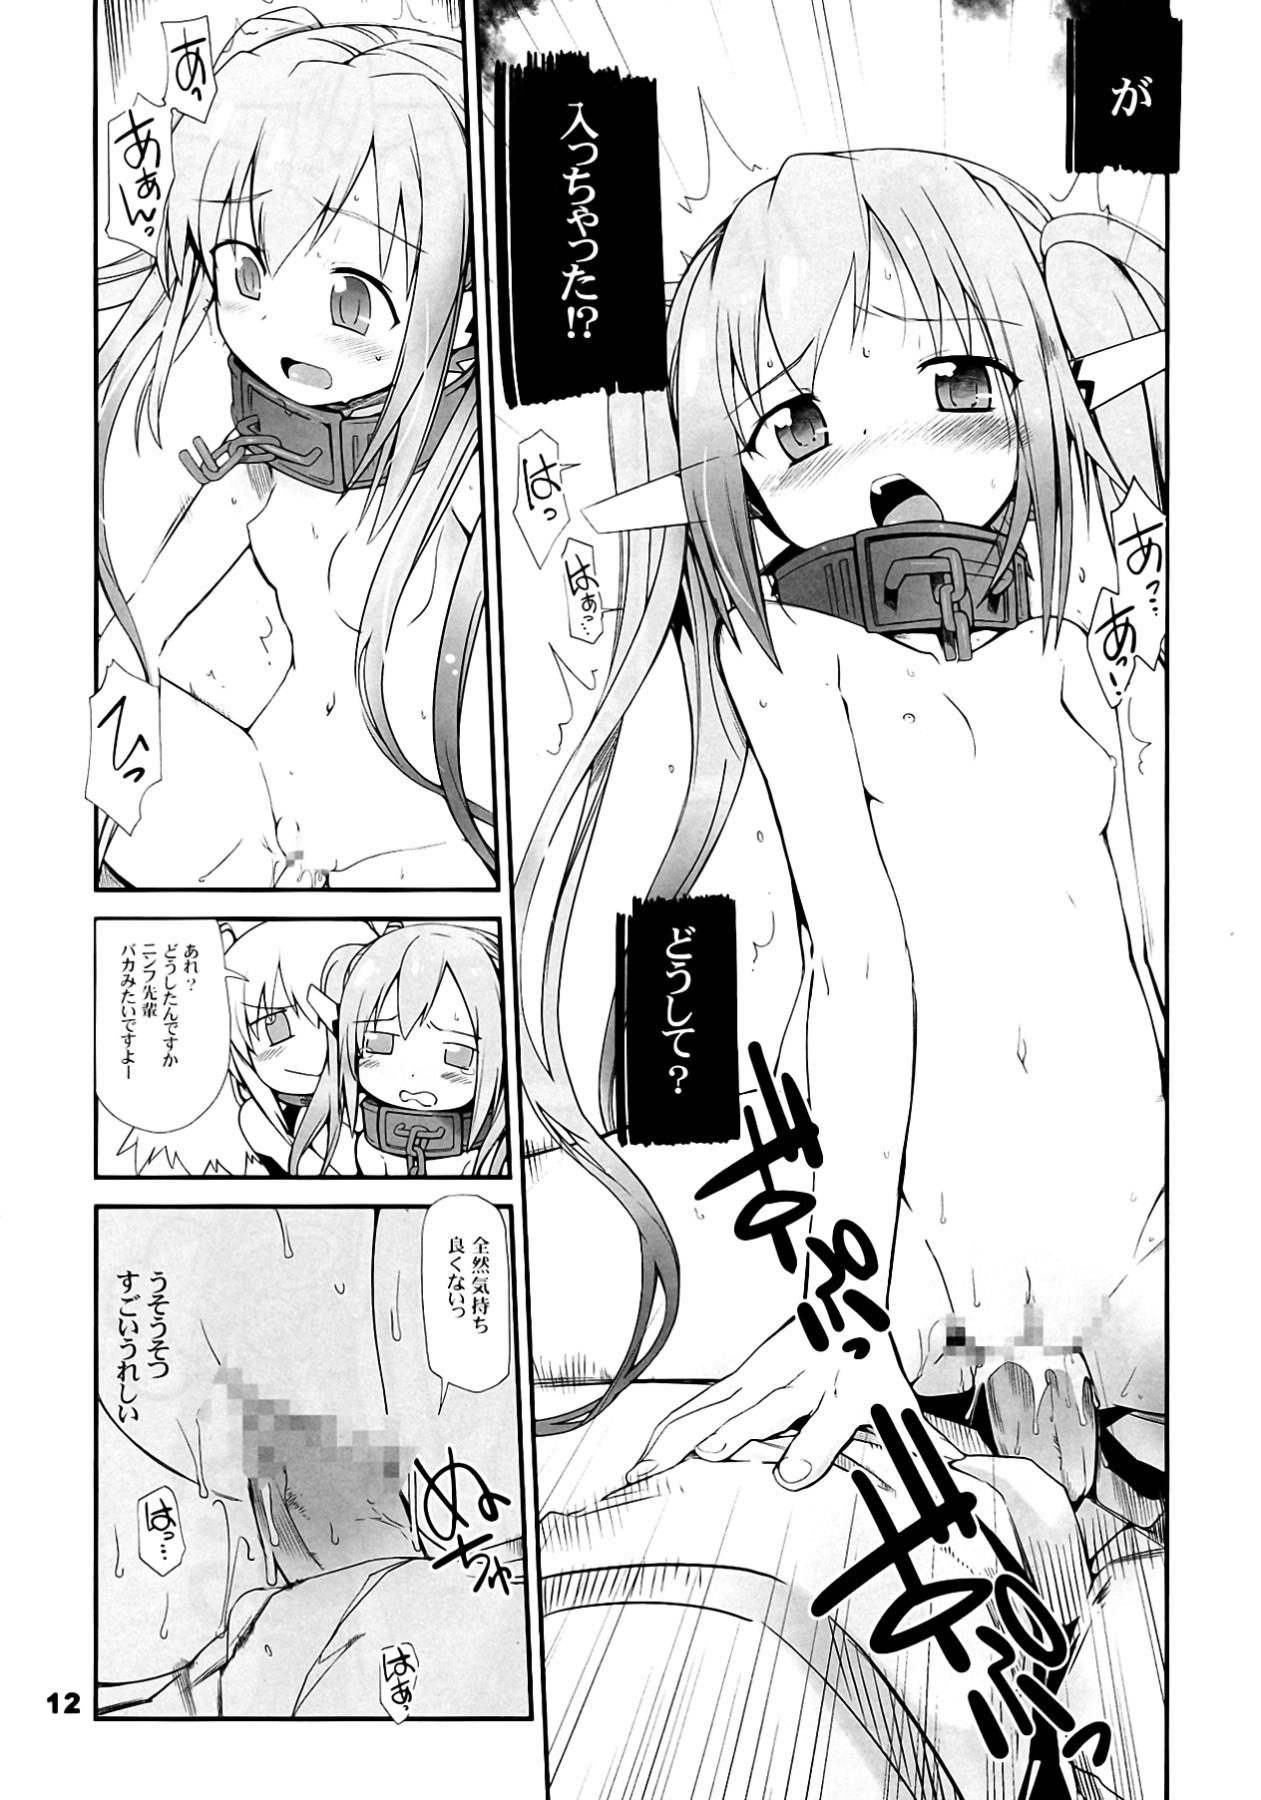 Cocks Angeloid Maji Tenshi - Sora no otoshimono Amigo - Page 12